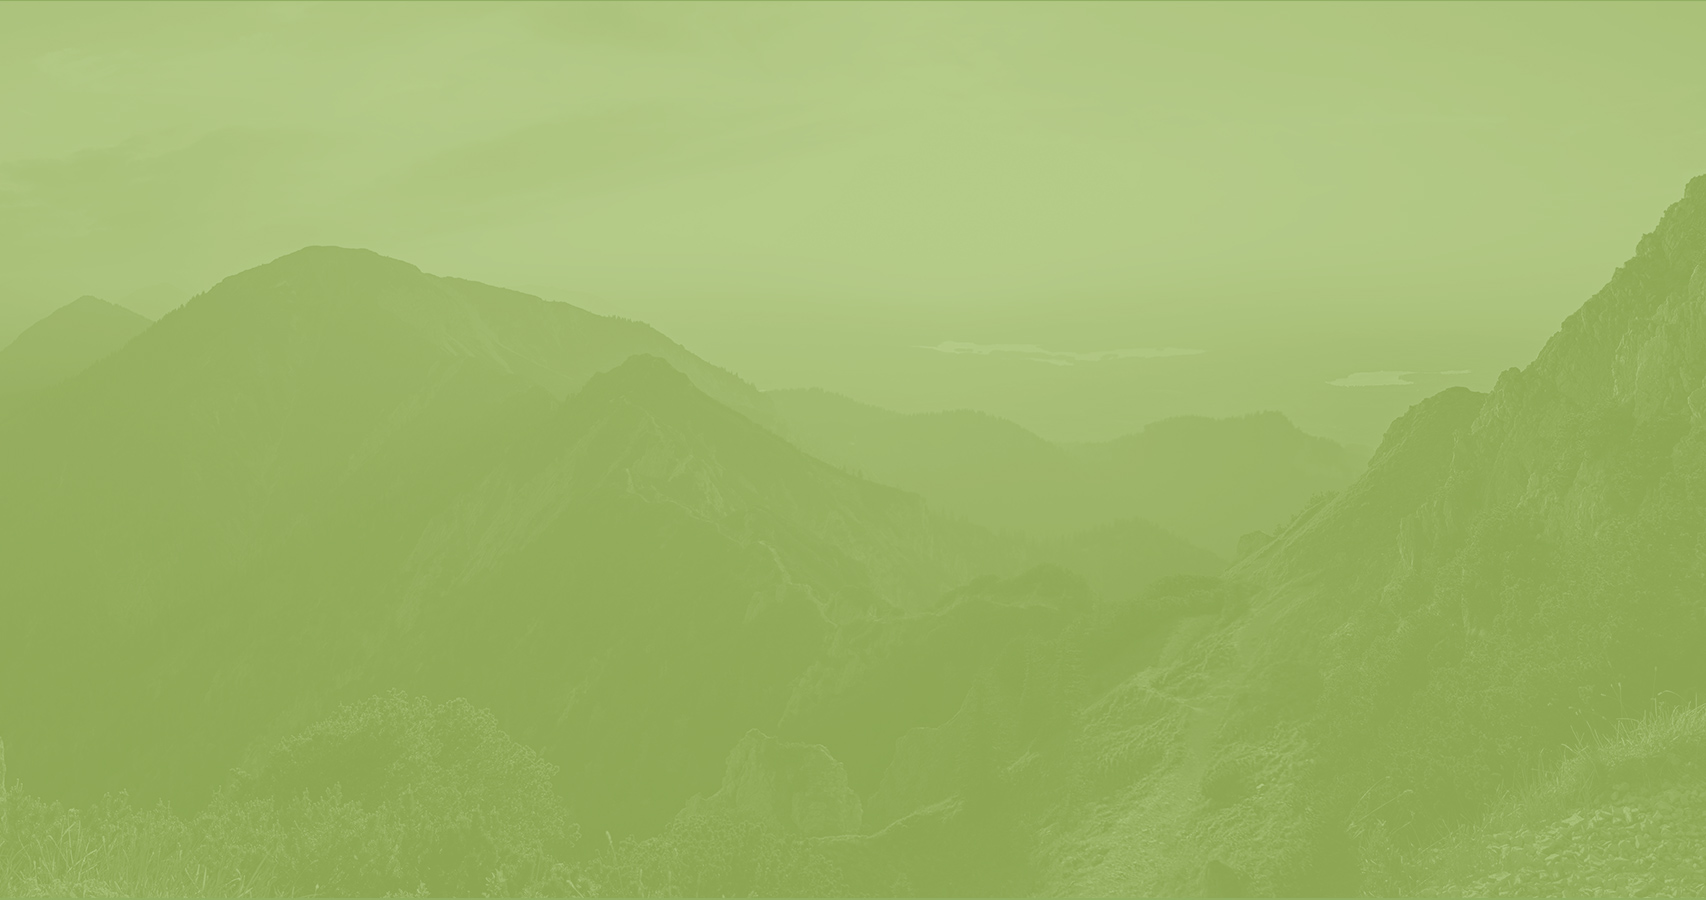 Paisaje montañoso teñido de verde